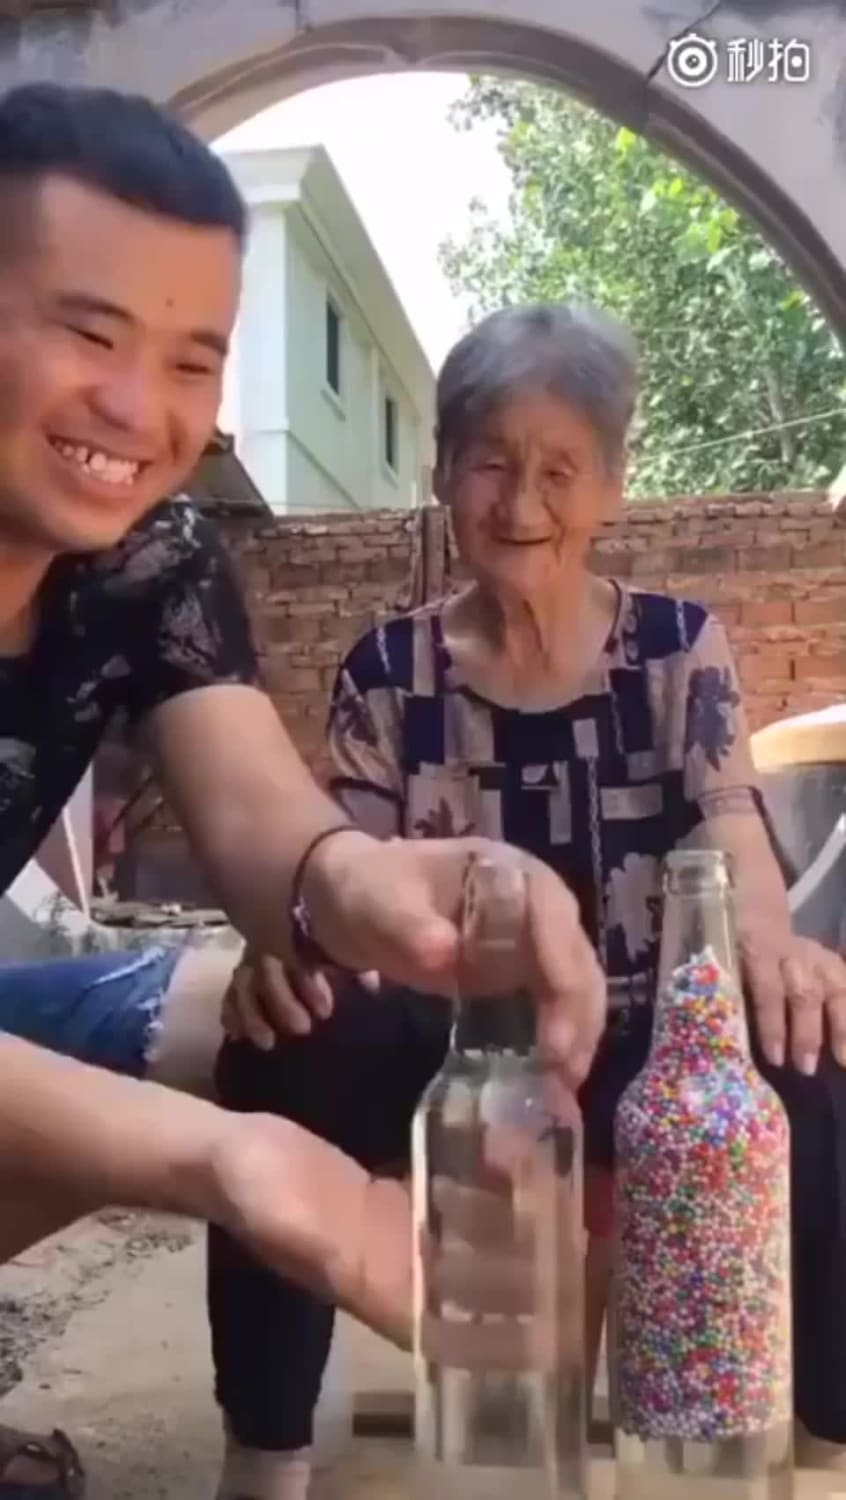 Cheering up grandma